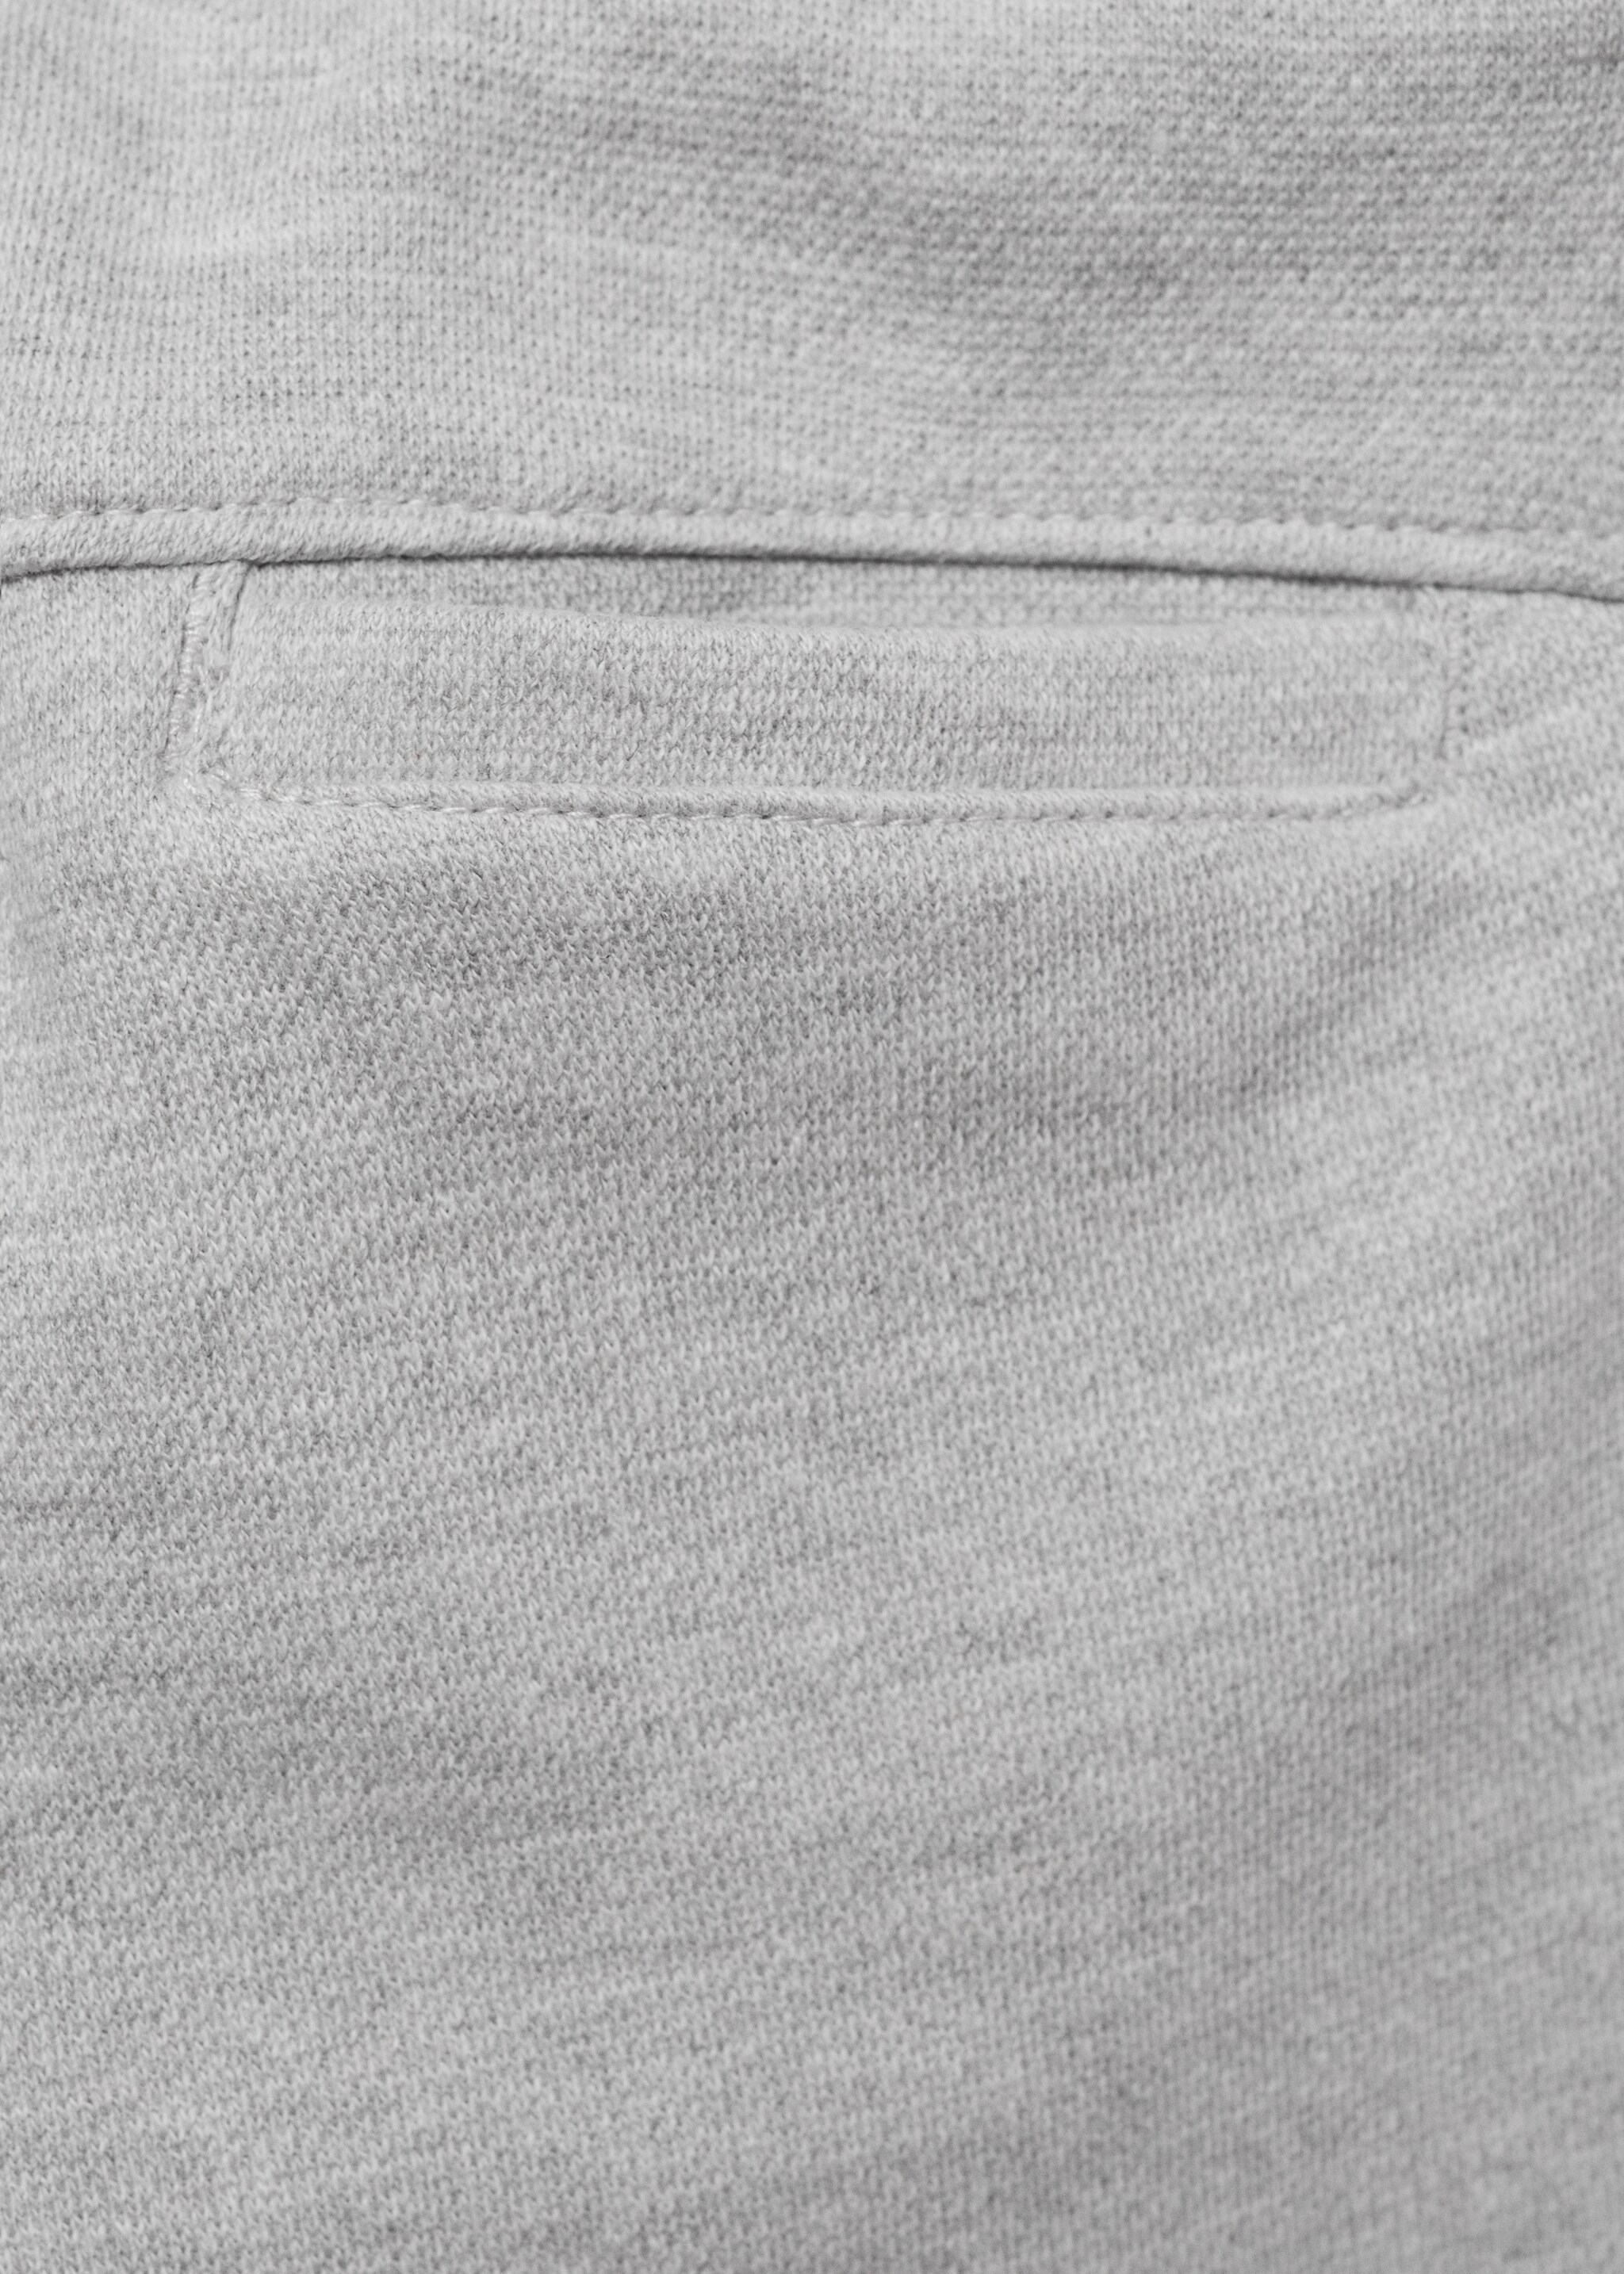 Pantalón jogger algodón - Detalle del artículo 0